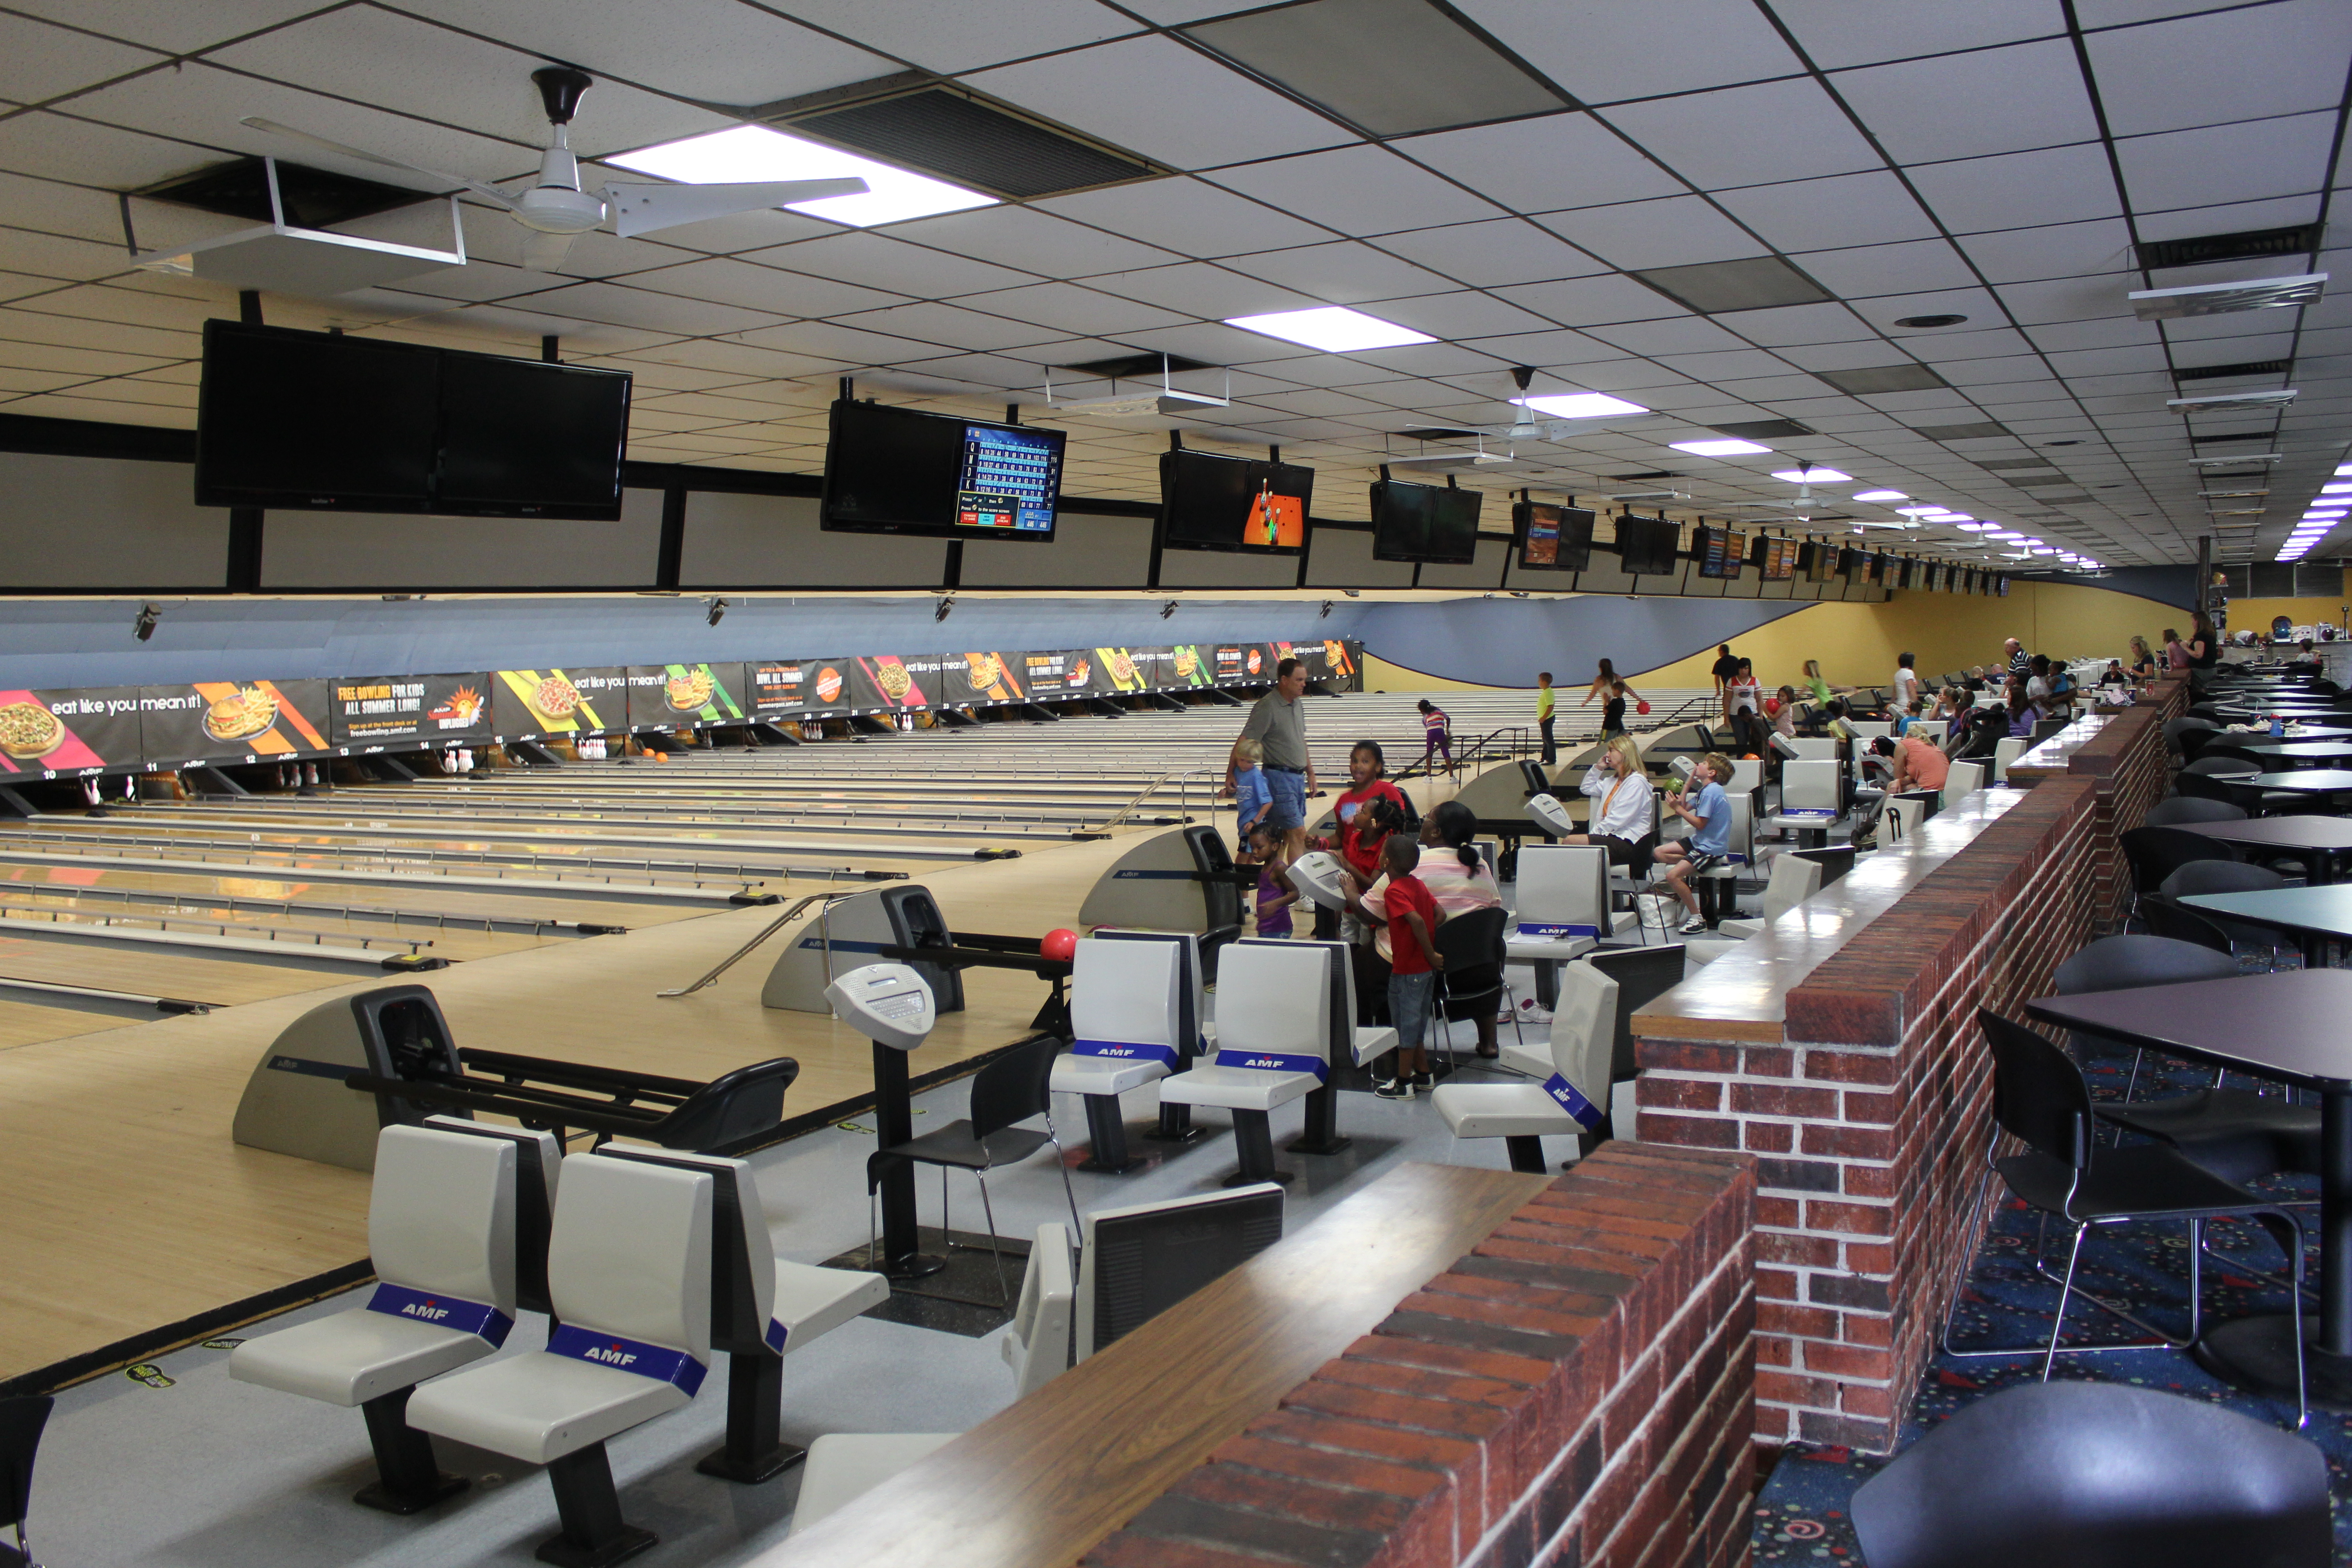 AMF bowling lanes in Lakeland, FL